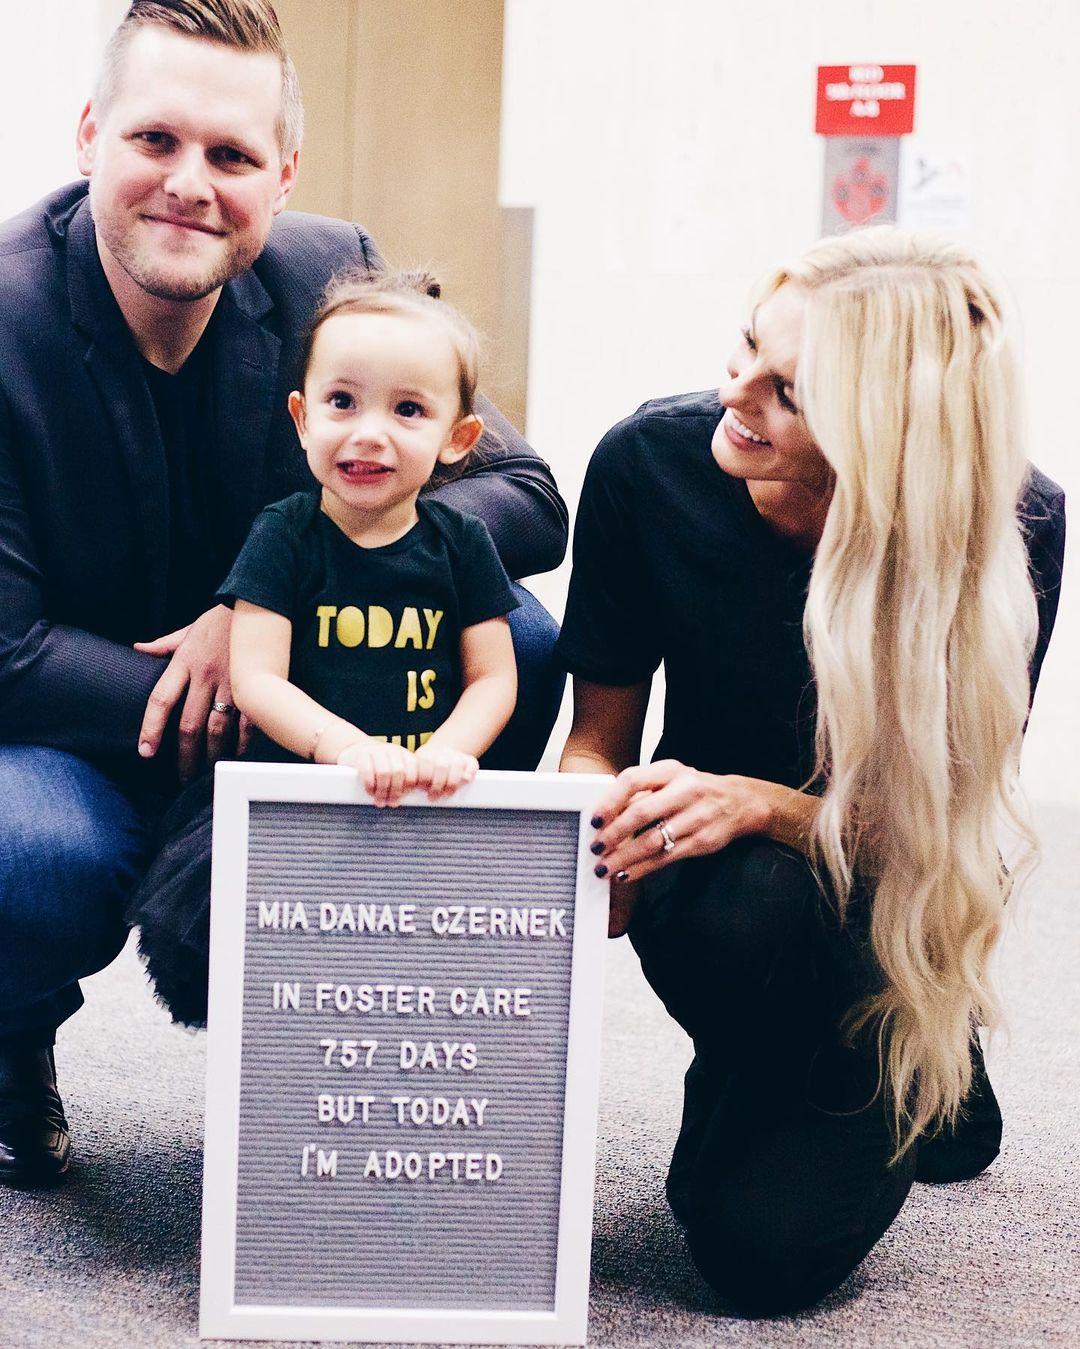 Baby Mia, aged two, on her adoption day. (Courtesy of <a href="https://www.instagram.com/kirstinczernek/">Kirstin Czernek</a>)